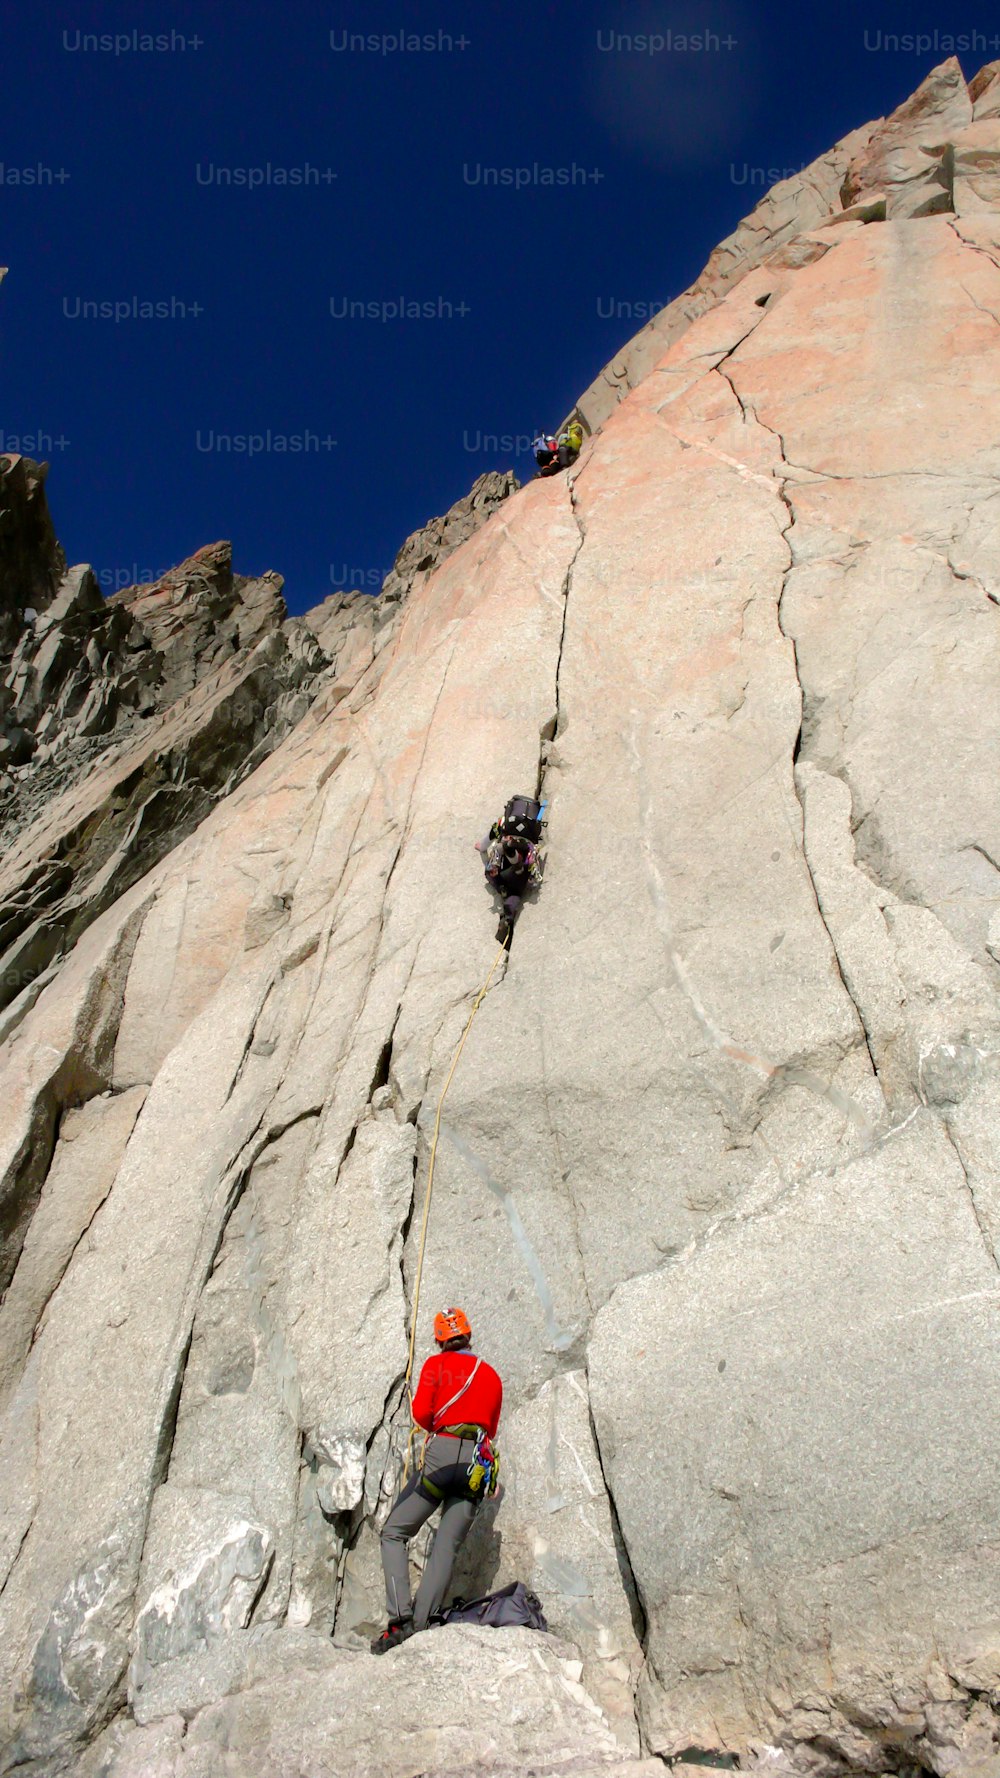 deux grimpeurs sur une voie difficile dans une paroi verticale de granit dans les Alpes françaises près de Chamonix sous un ciel bleu